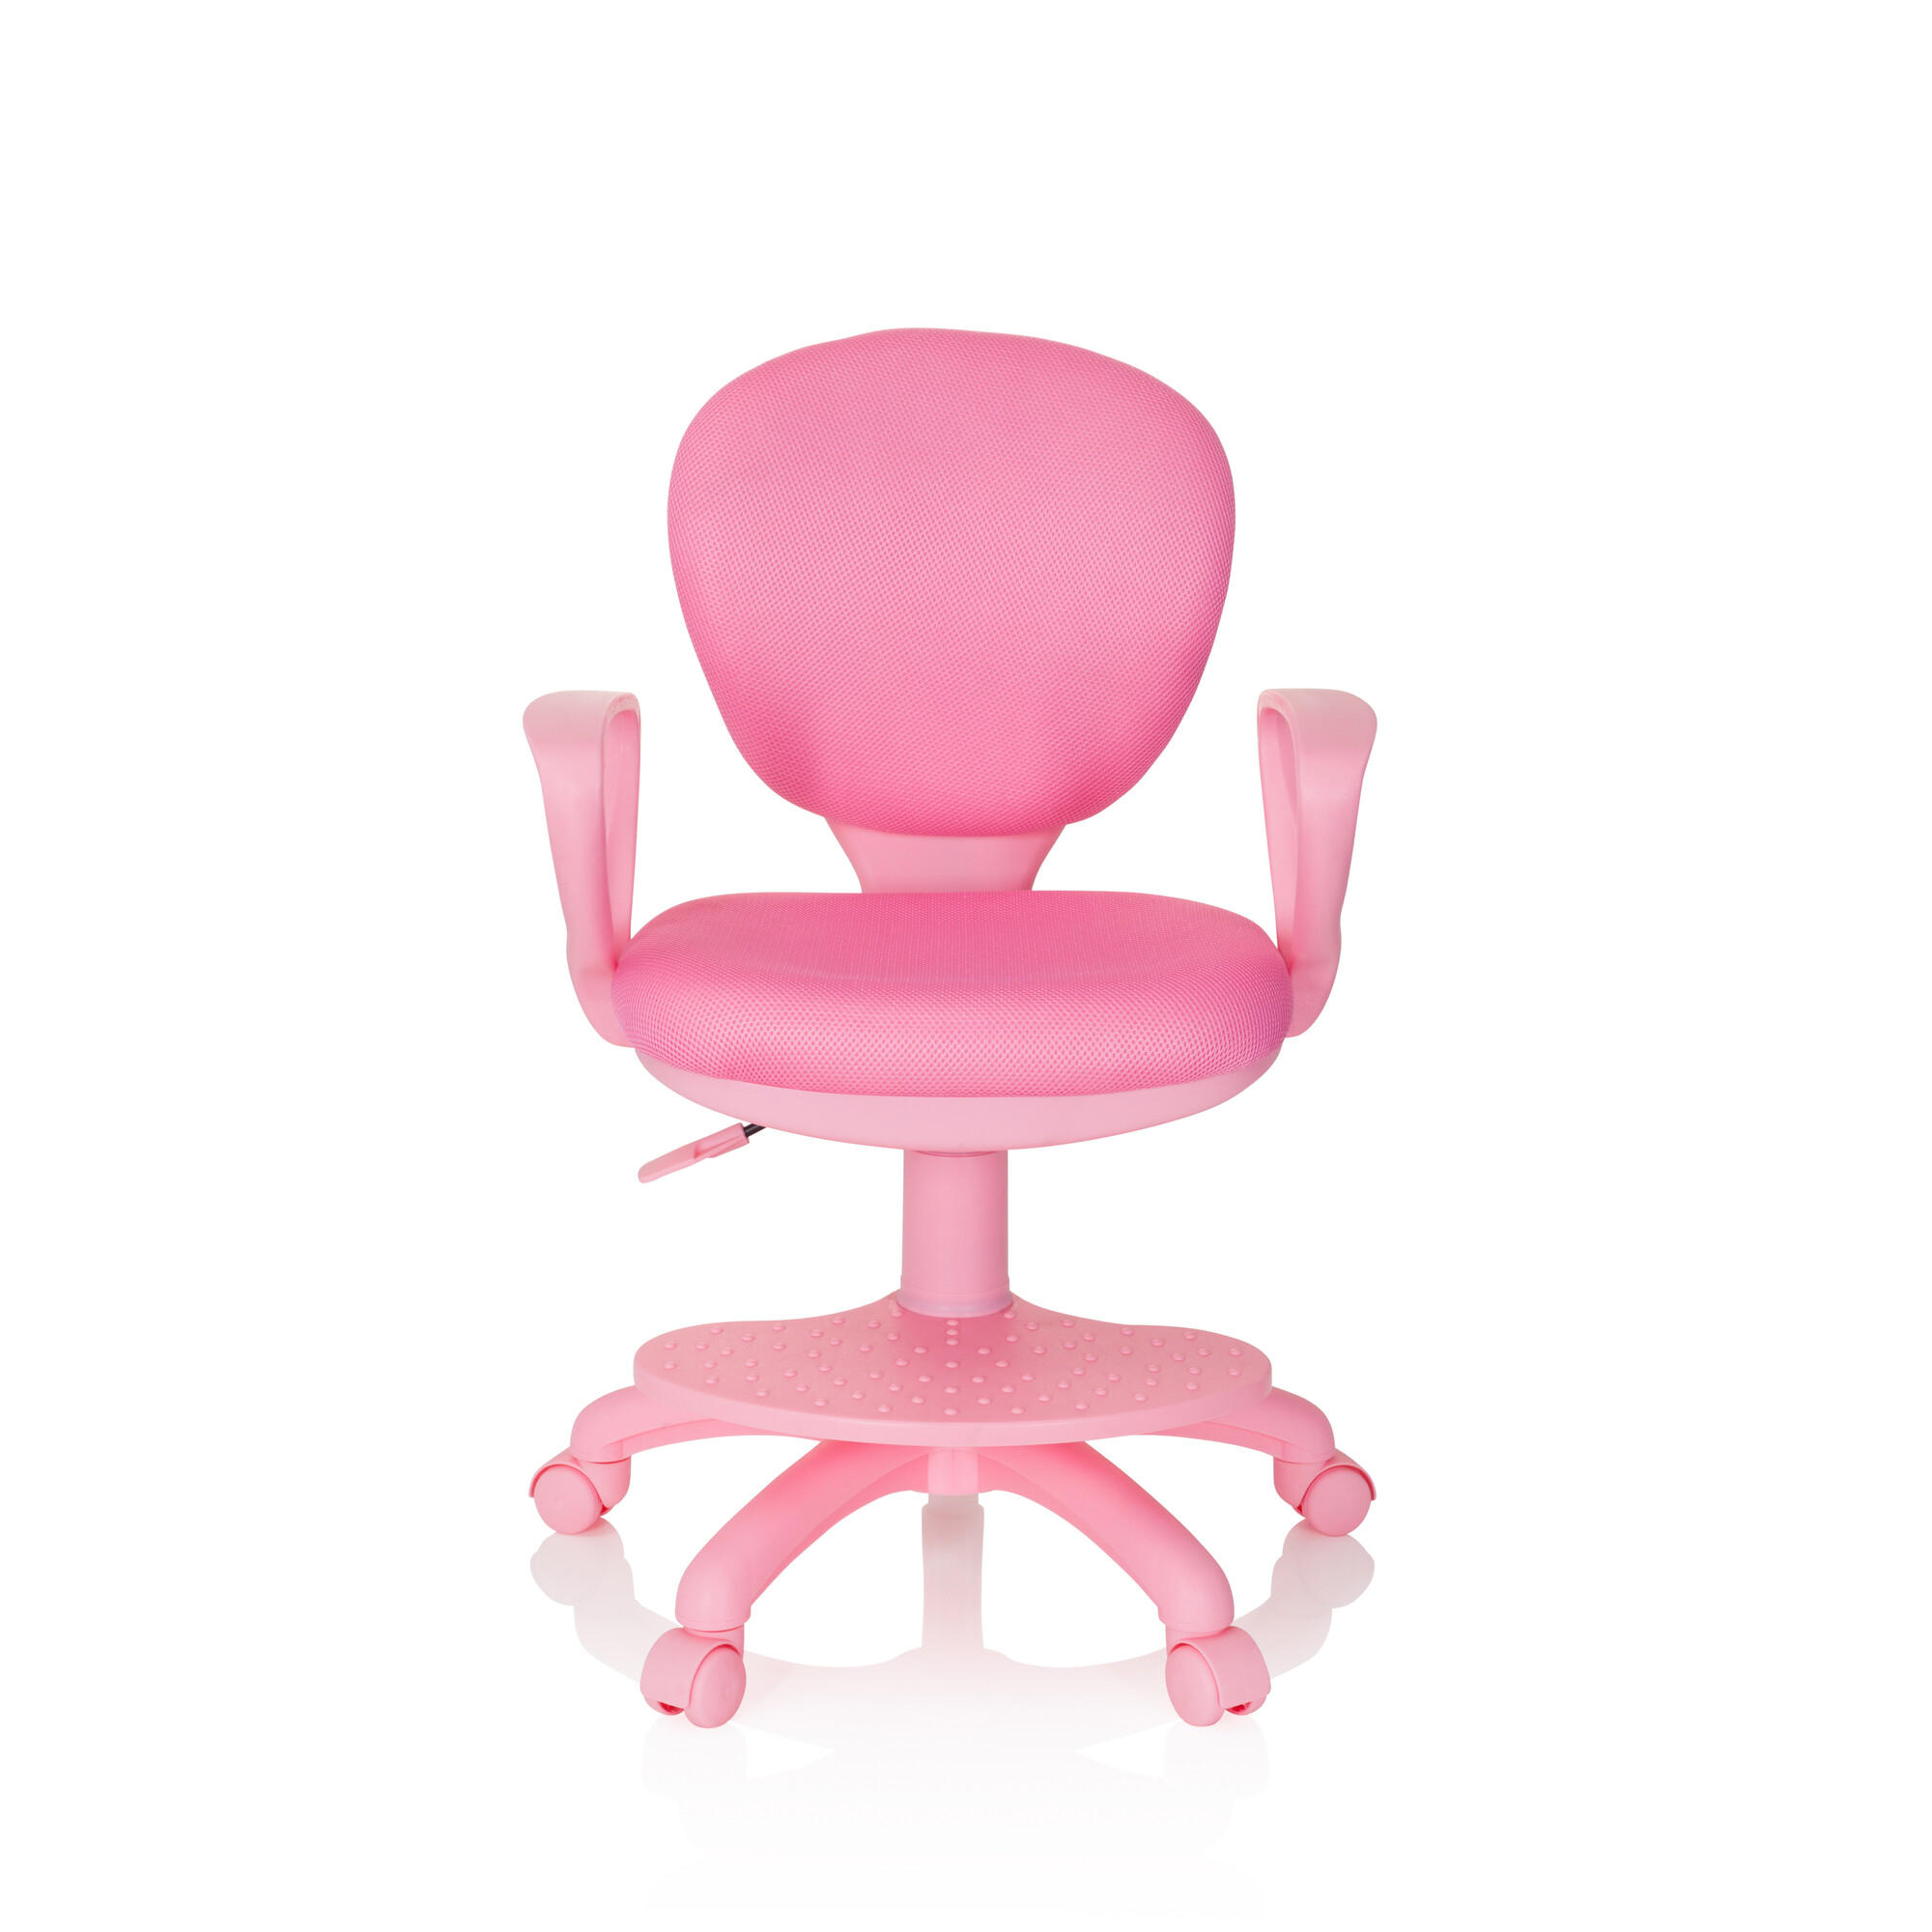 JUGENDDREHSTUHL Pink  - Pink, Basics, Kunststoff (53/83-95/51cm) - MID.YOU